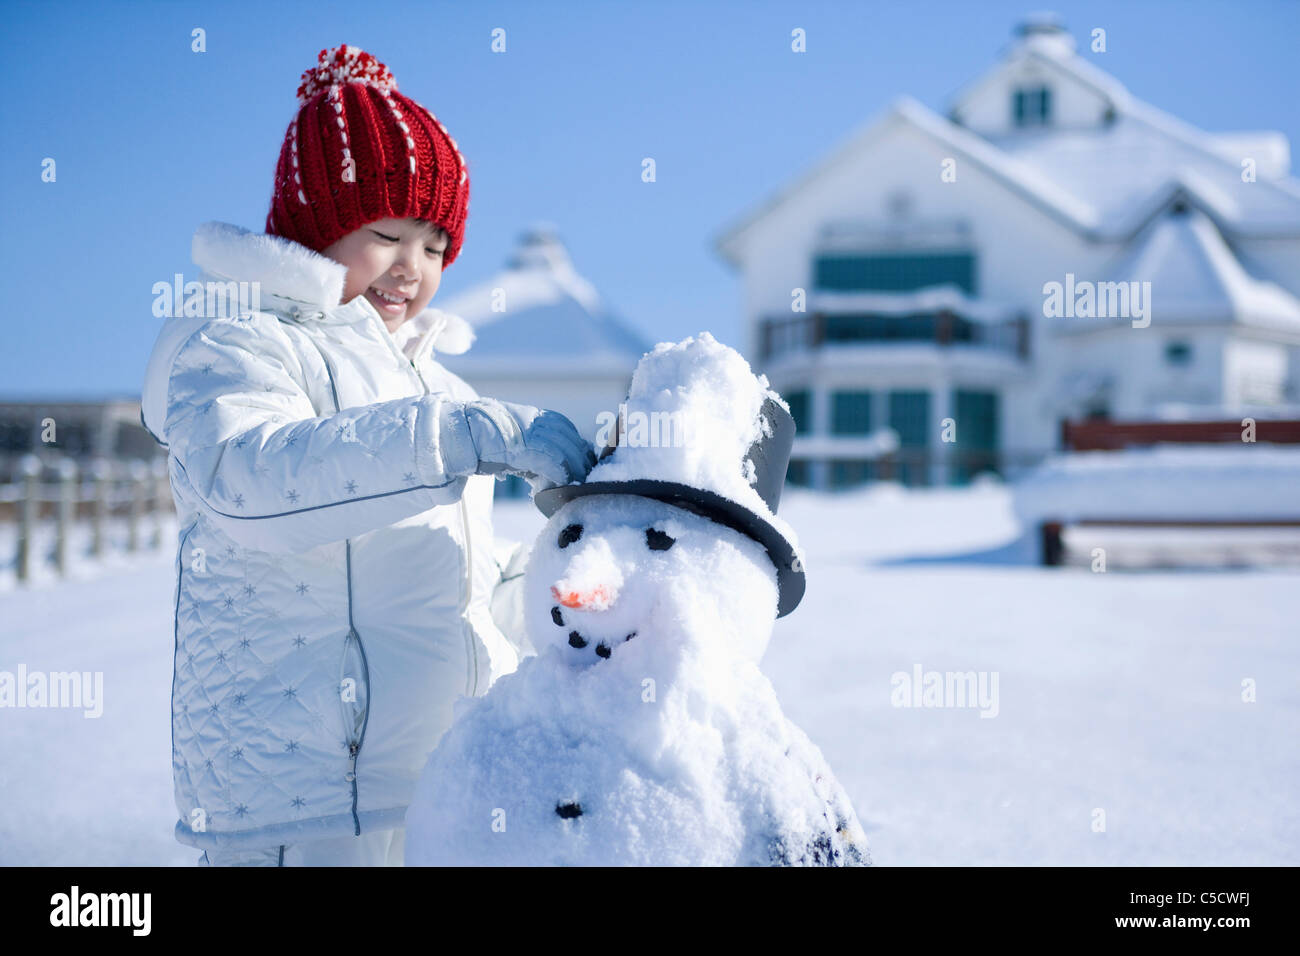 girl stood next to the snowman Stock Photo